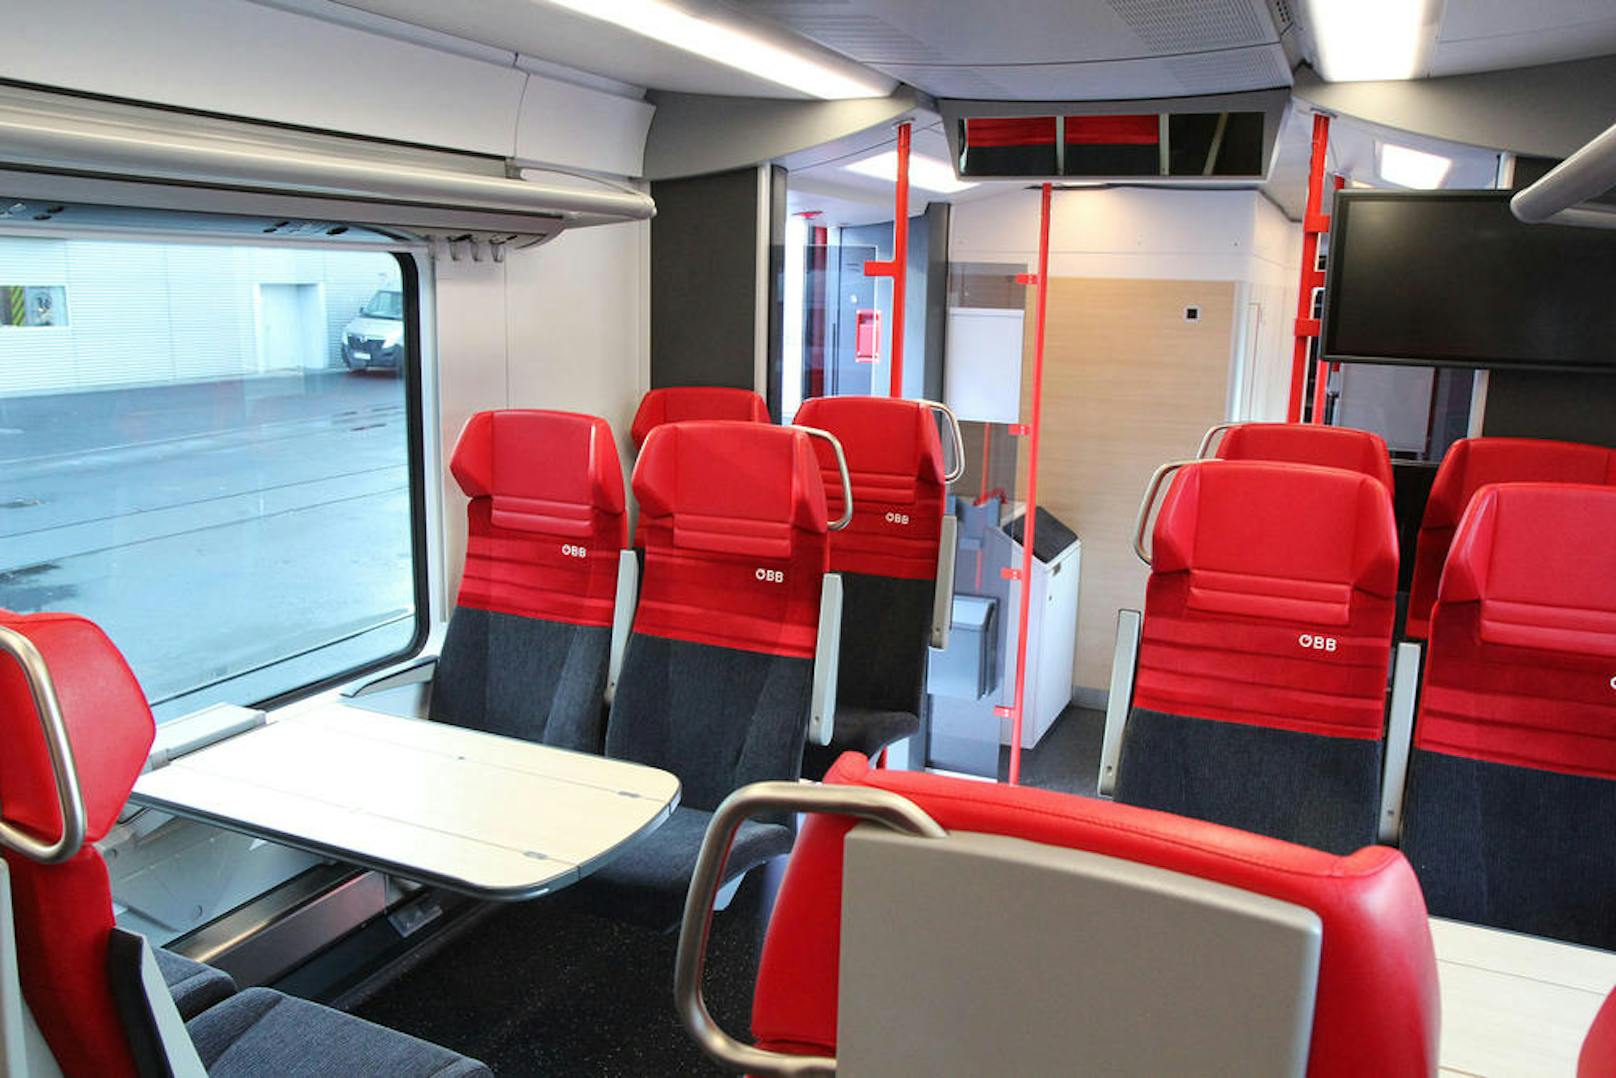 Erst seit Ende 2015 fahren in Wien Cityjets auf den S-Bahn-Strecken. Nun werden sie umgerüstet. Die Passagiere sollen mehr Beinfreiheit bekommen.